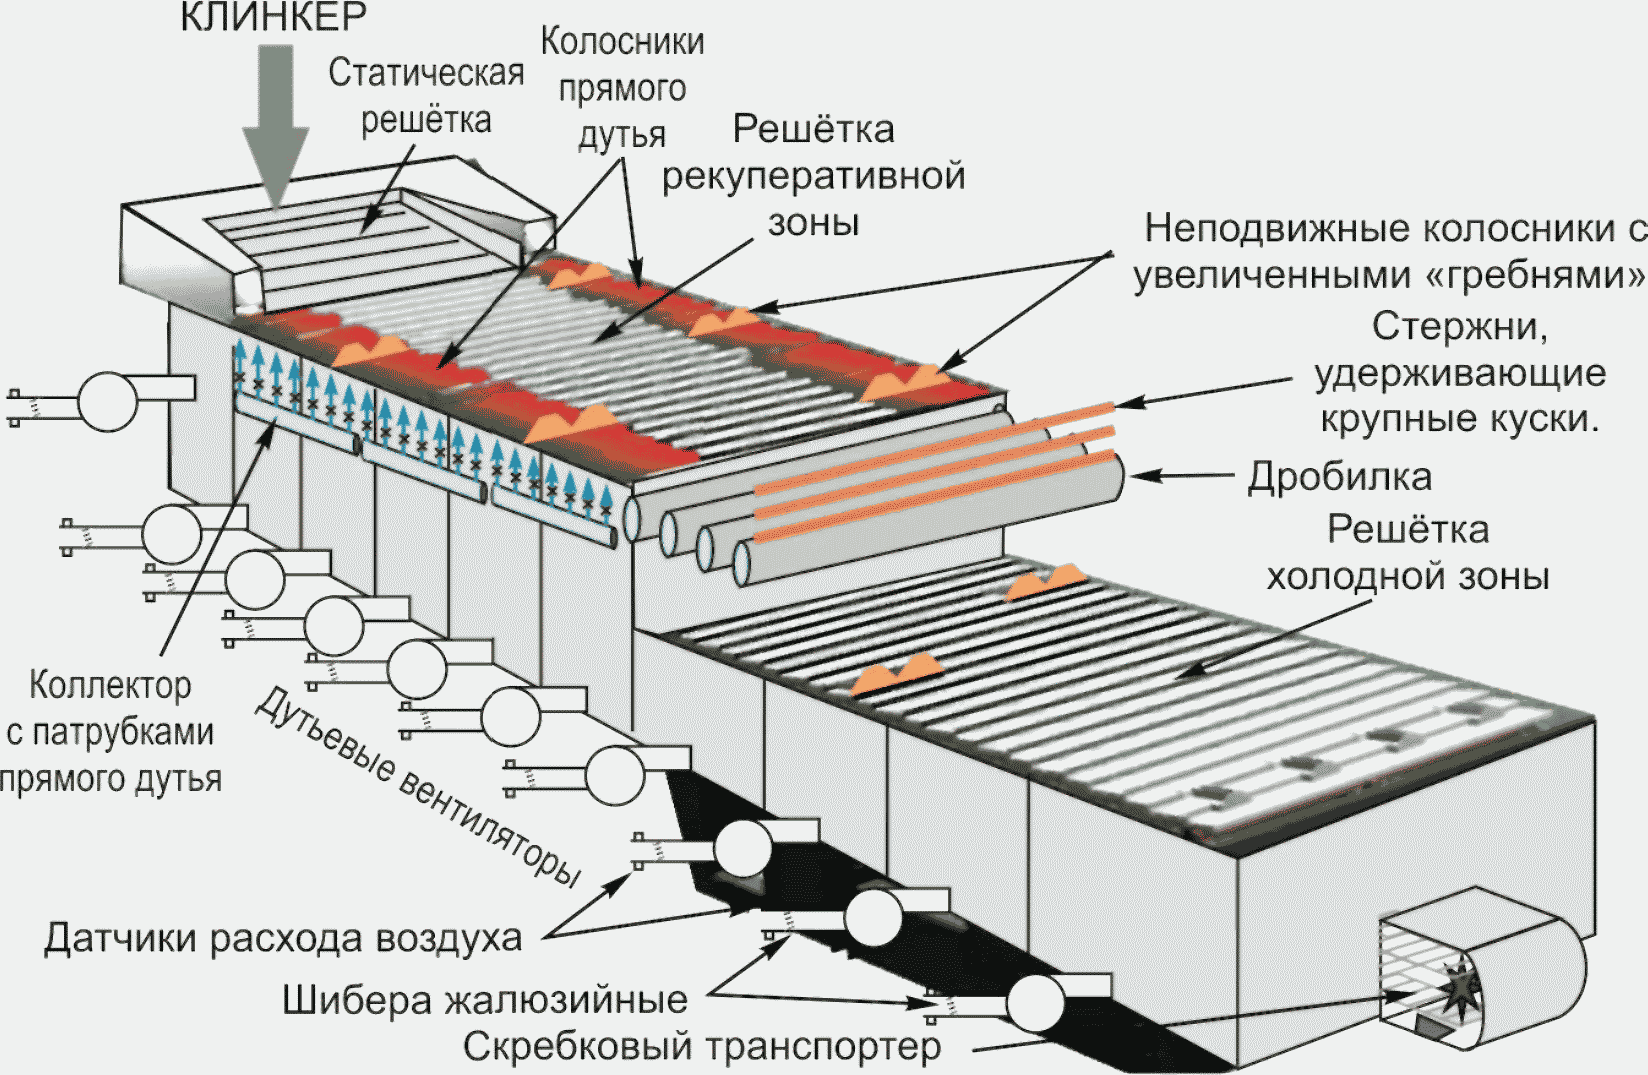 Схема колосникового охладителя Клинкера типа « Волга»: